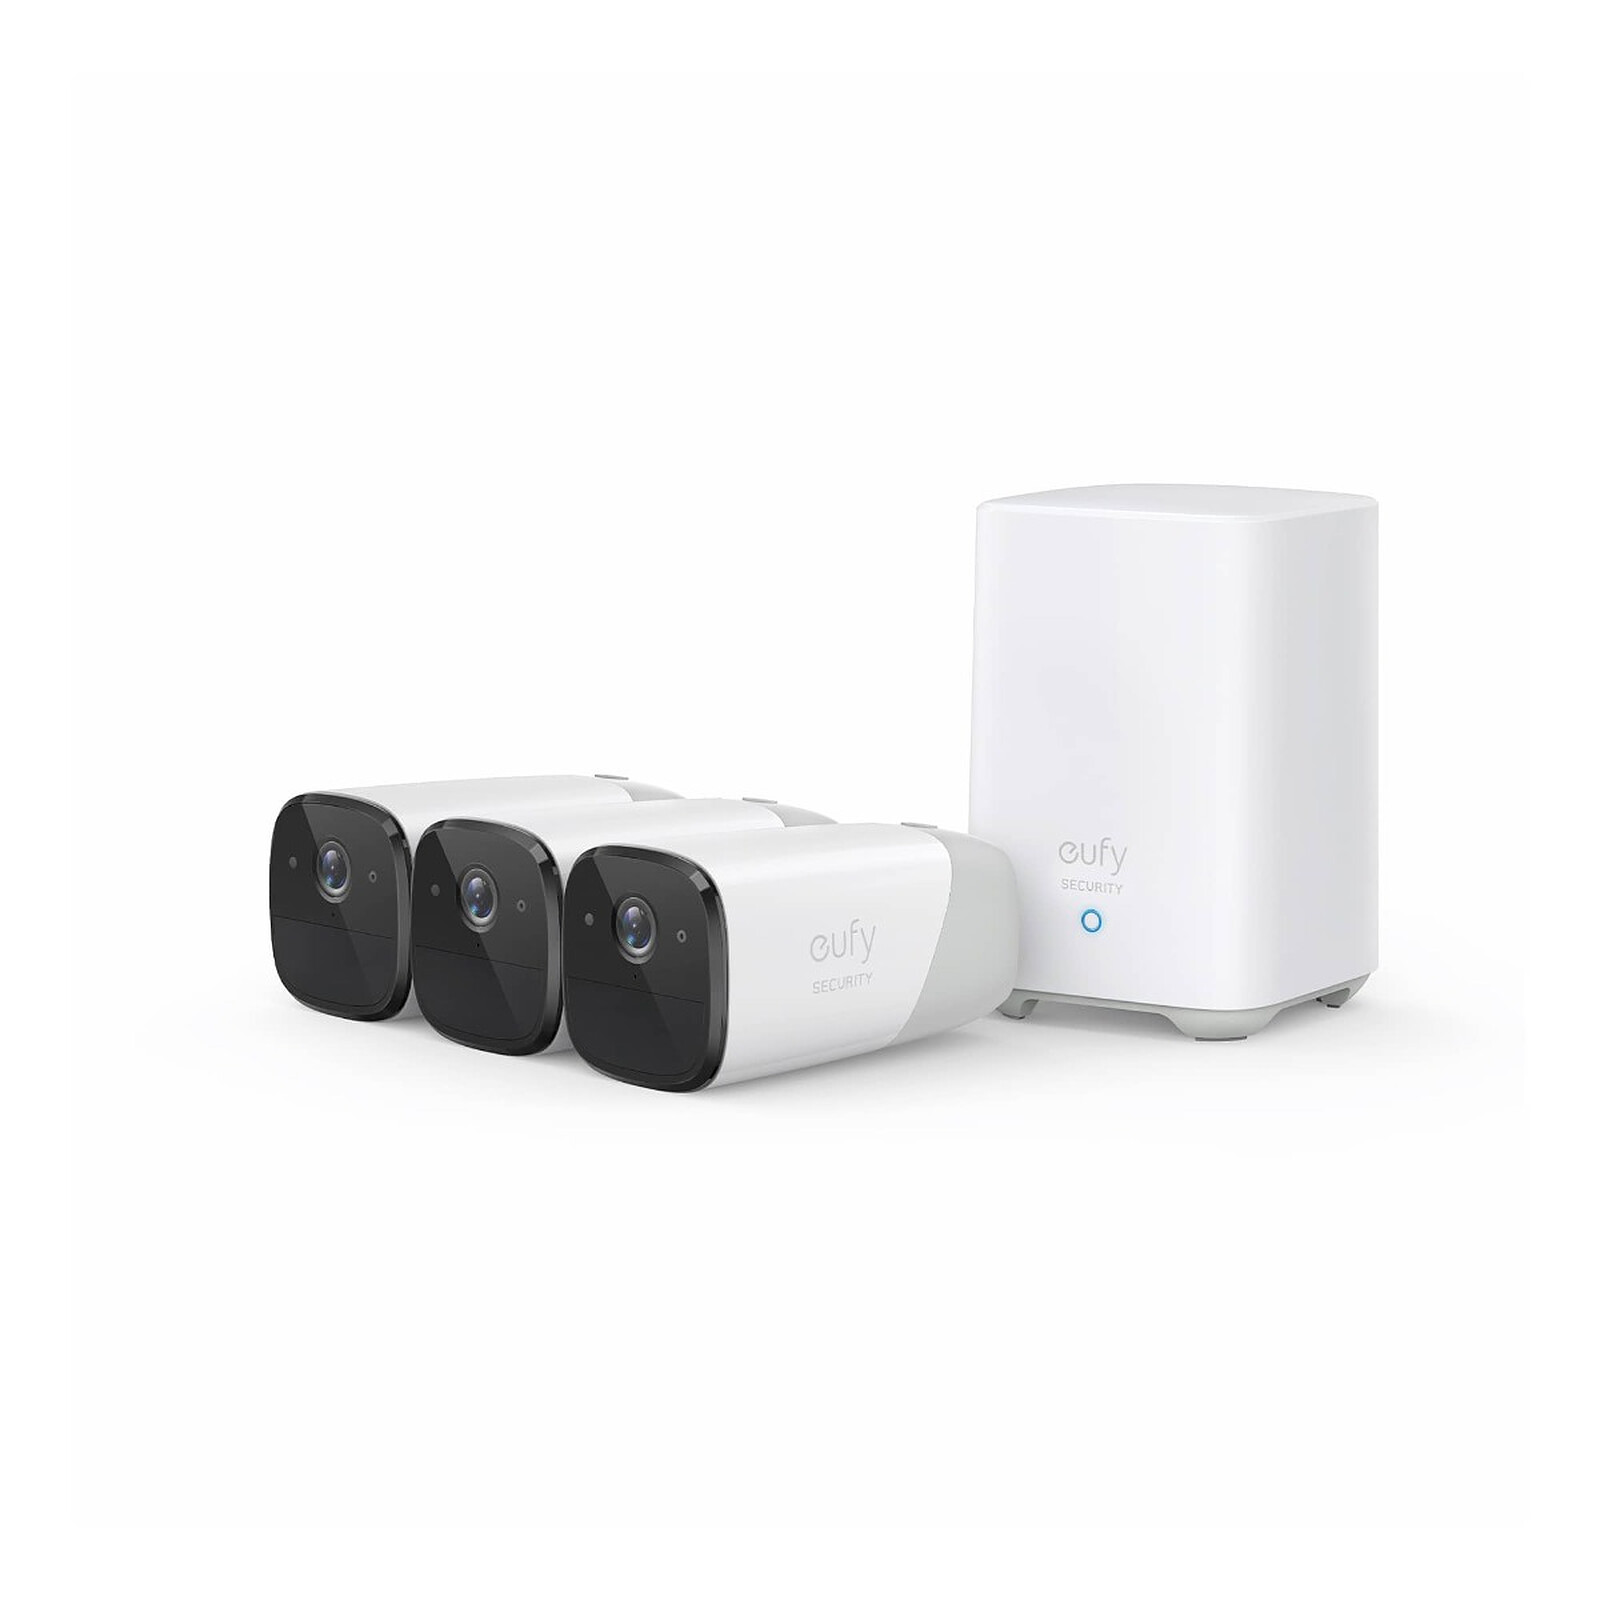 Eufy - Kit 3 caméras eufyCam 2 1080p + Home base - Caméra IP